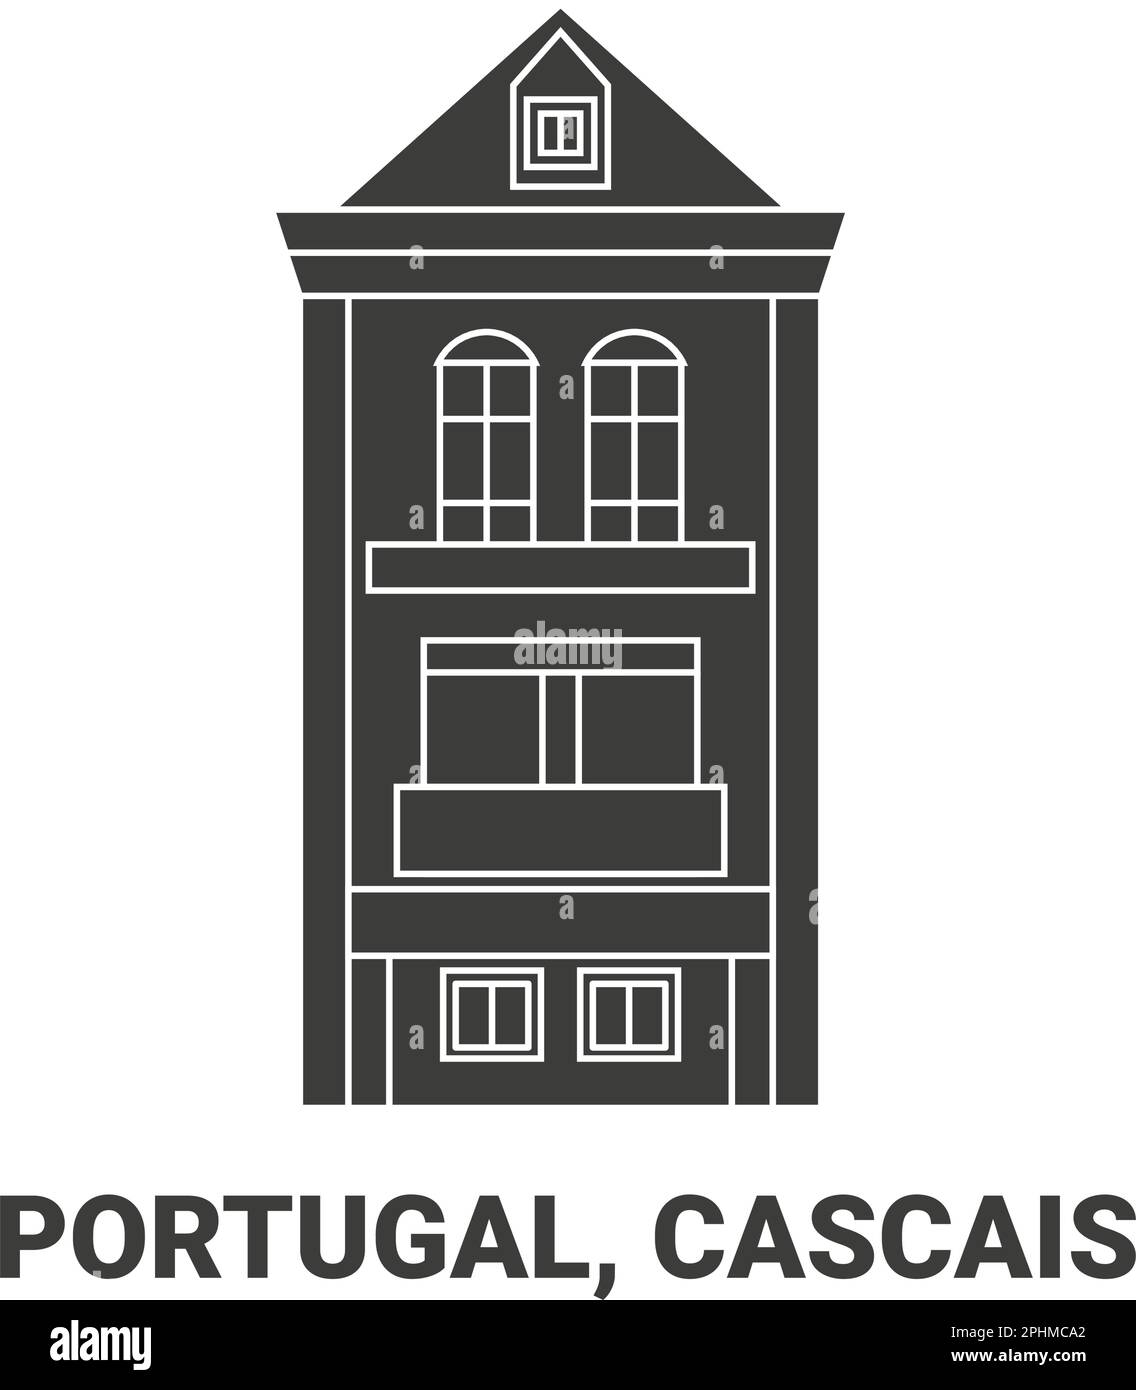 Portugal, Cascais, Reise-Wahrzeichen-Vektordarstellung Stock Vektor